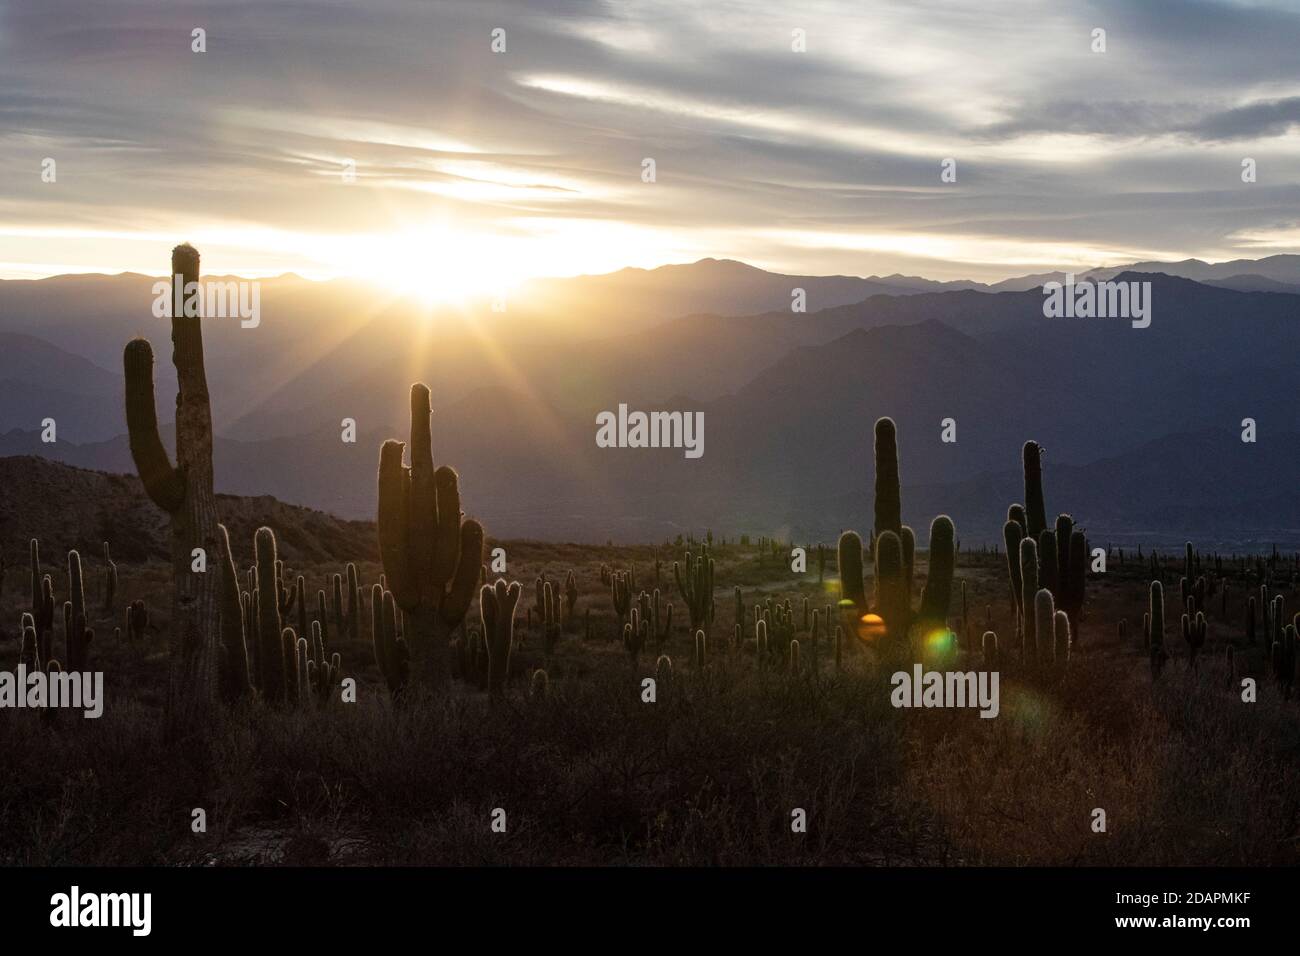 Coucher de soleil sur le cactus du saguaro argentin, Echinopsis terscheckii, parc national de Los Cardones, province de Salta, Argentine. Banque D'Images